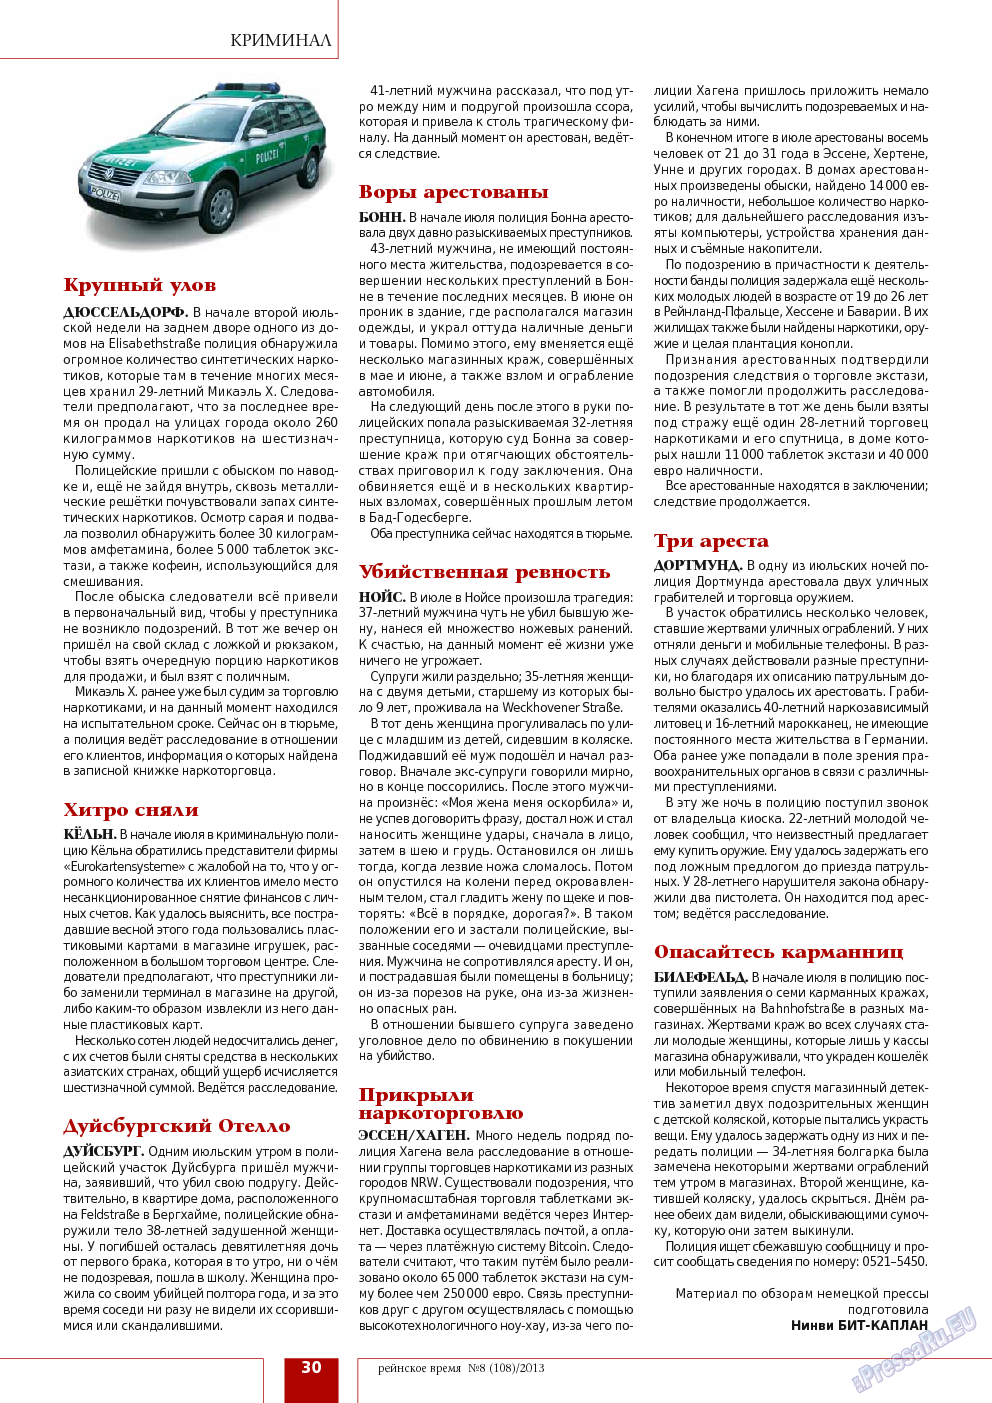 Рейнское время, журнал. 2013 №8 стр.30